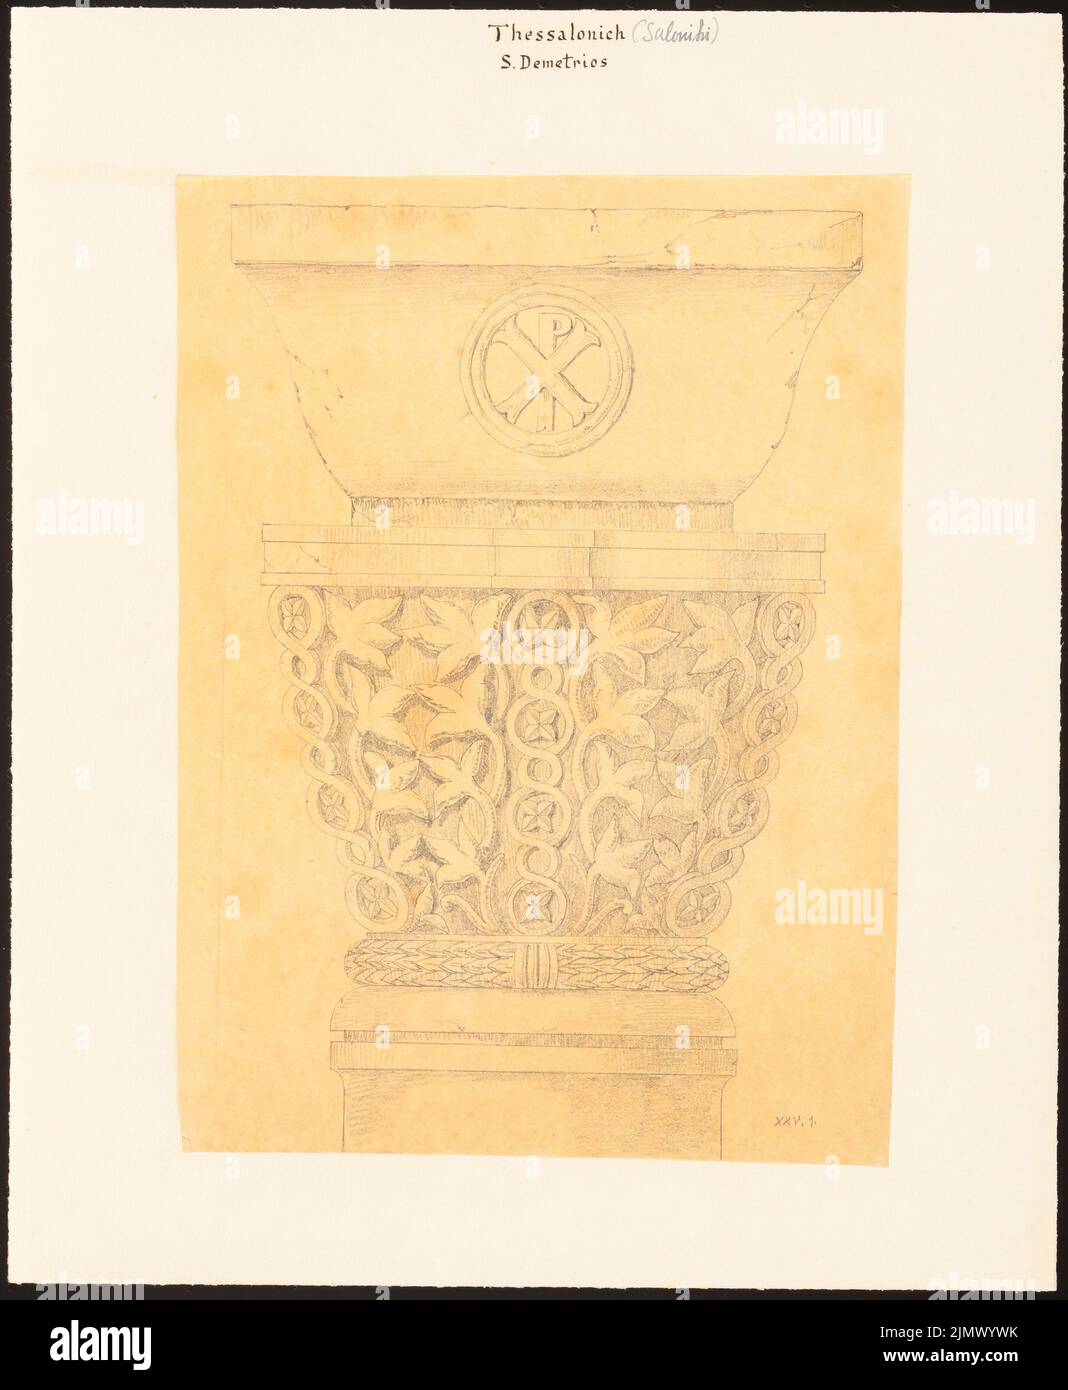 Quast Ferdinand von (1807-1877), S. Demetrios in Saloniki/Thessaloniki (sin DAT.): Por nombres: Vista de una columna con el monograma de Cristo (presumiblemente según Charles Texier y Richard P. Pullan, XXV.1.). Lápiz sobre transparente, 35,4 x 29,1 cm (incluidos los bordes de escaneo) Quast Ferdinand von (1807-1877): S. Demetrios, Tesalónica Foto de stock